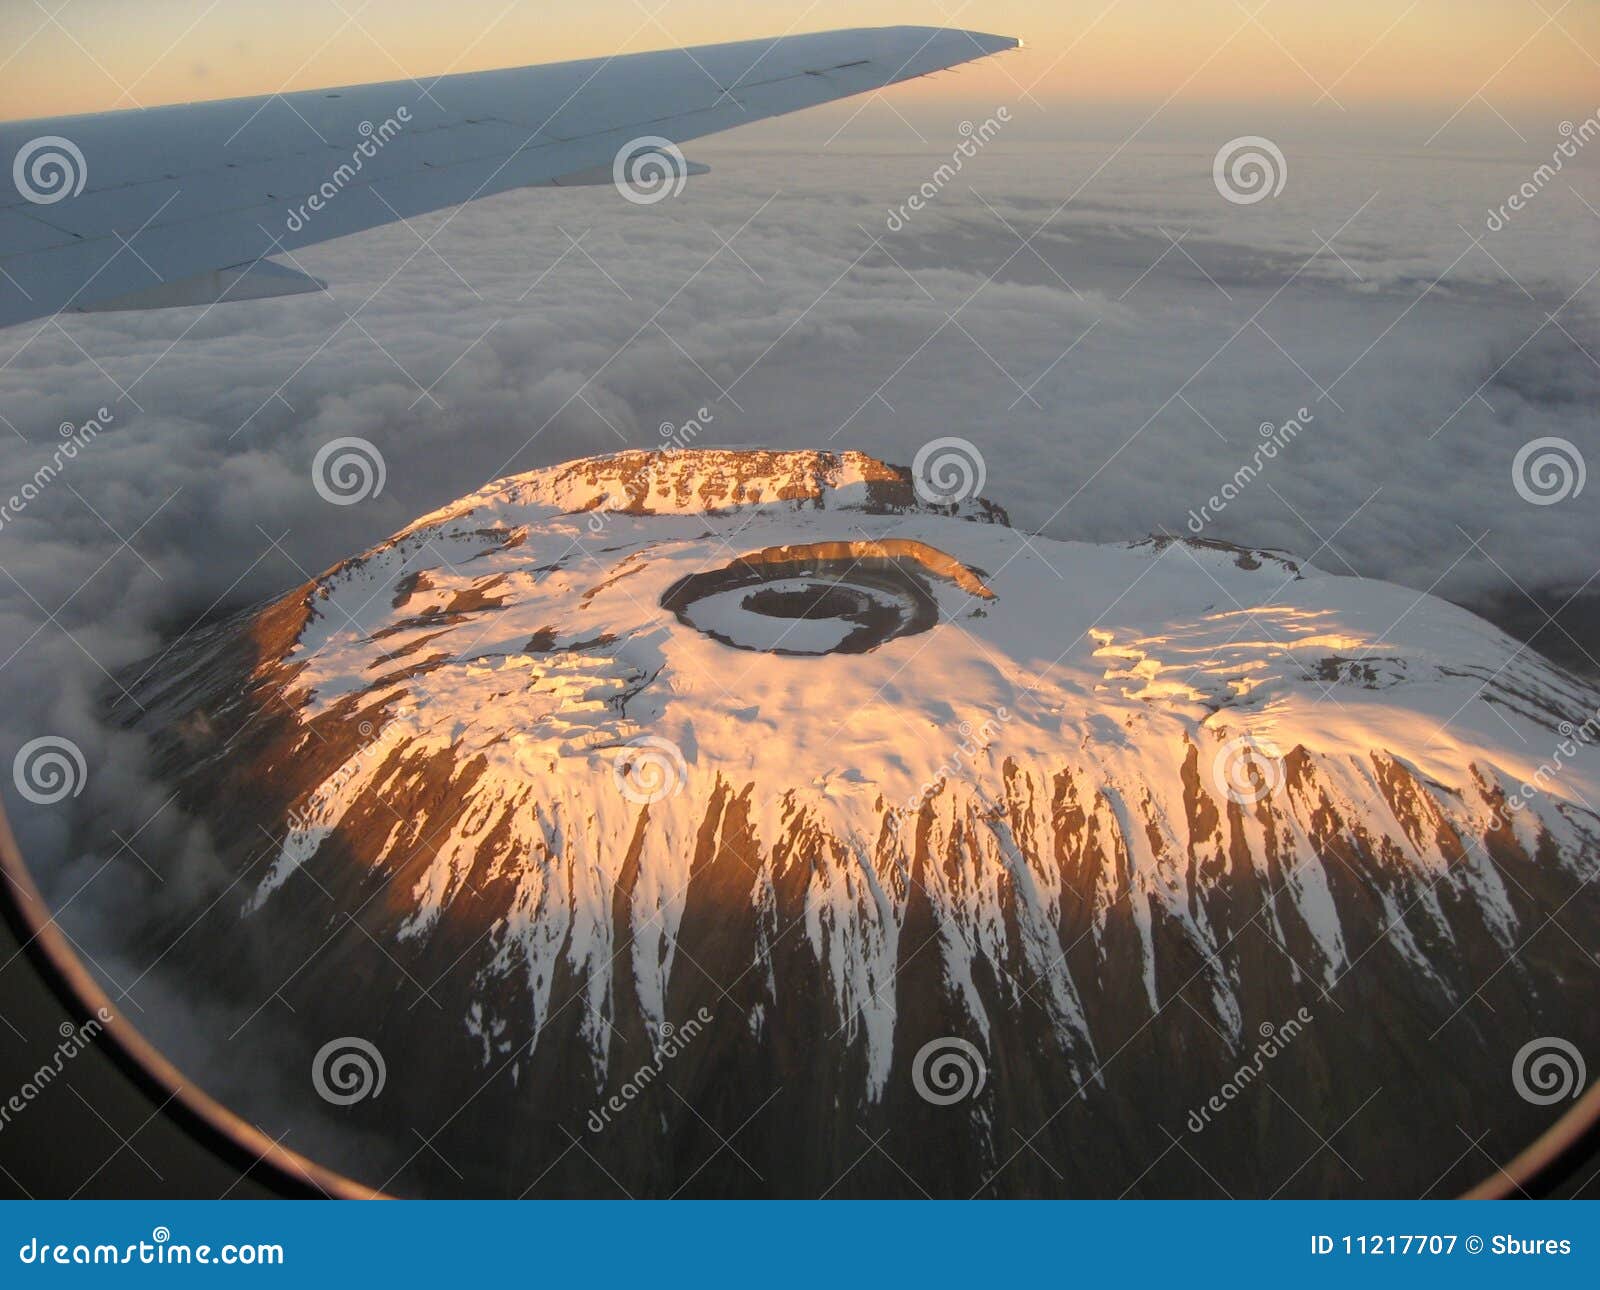 flying over mount kilimanjaro